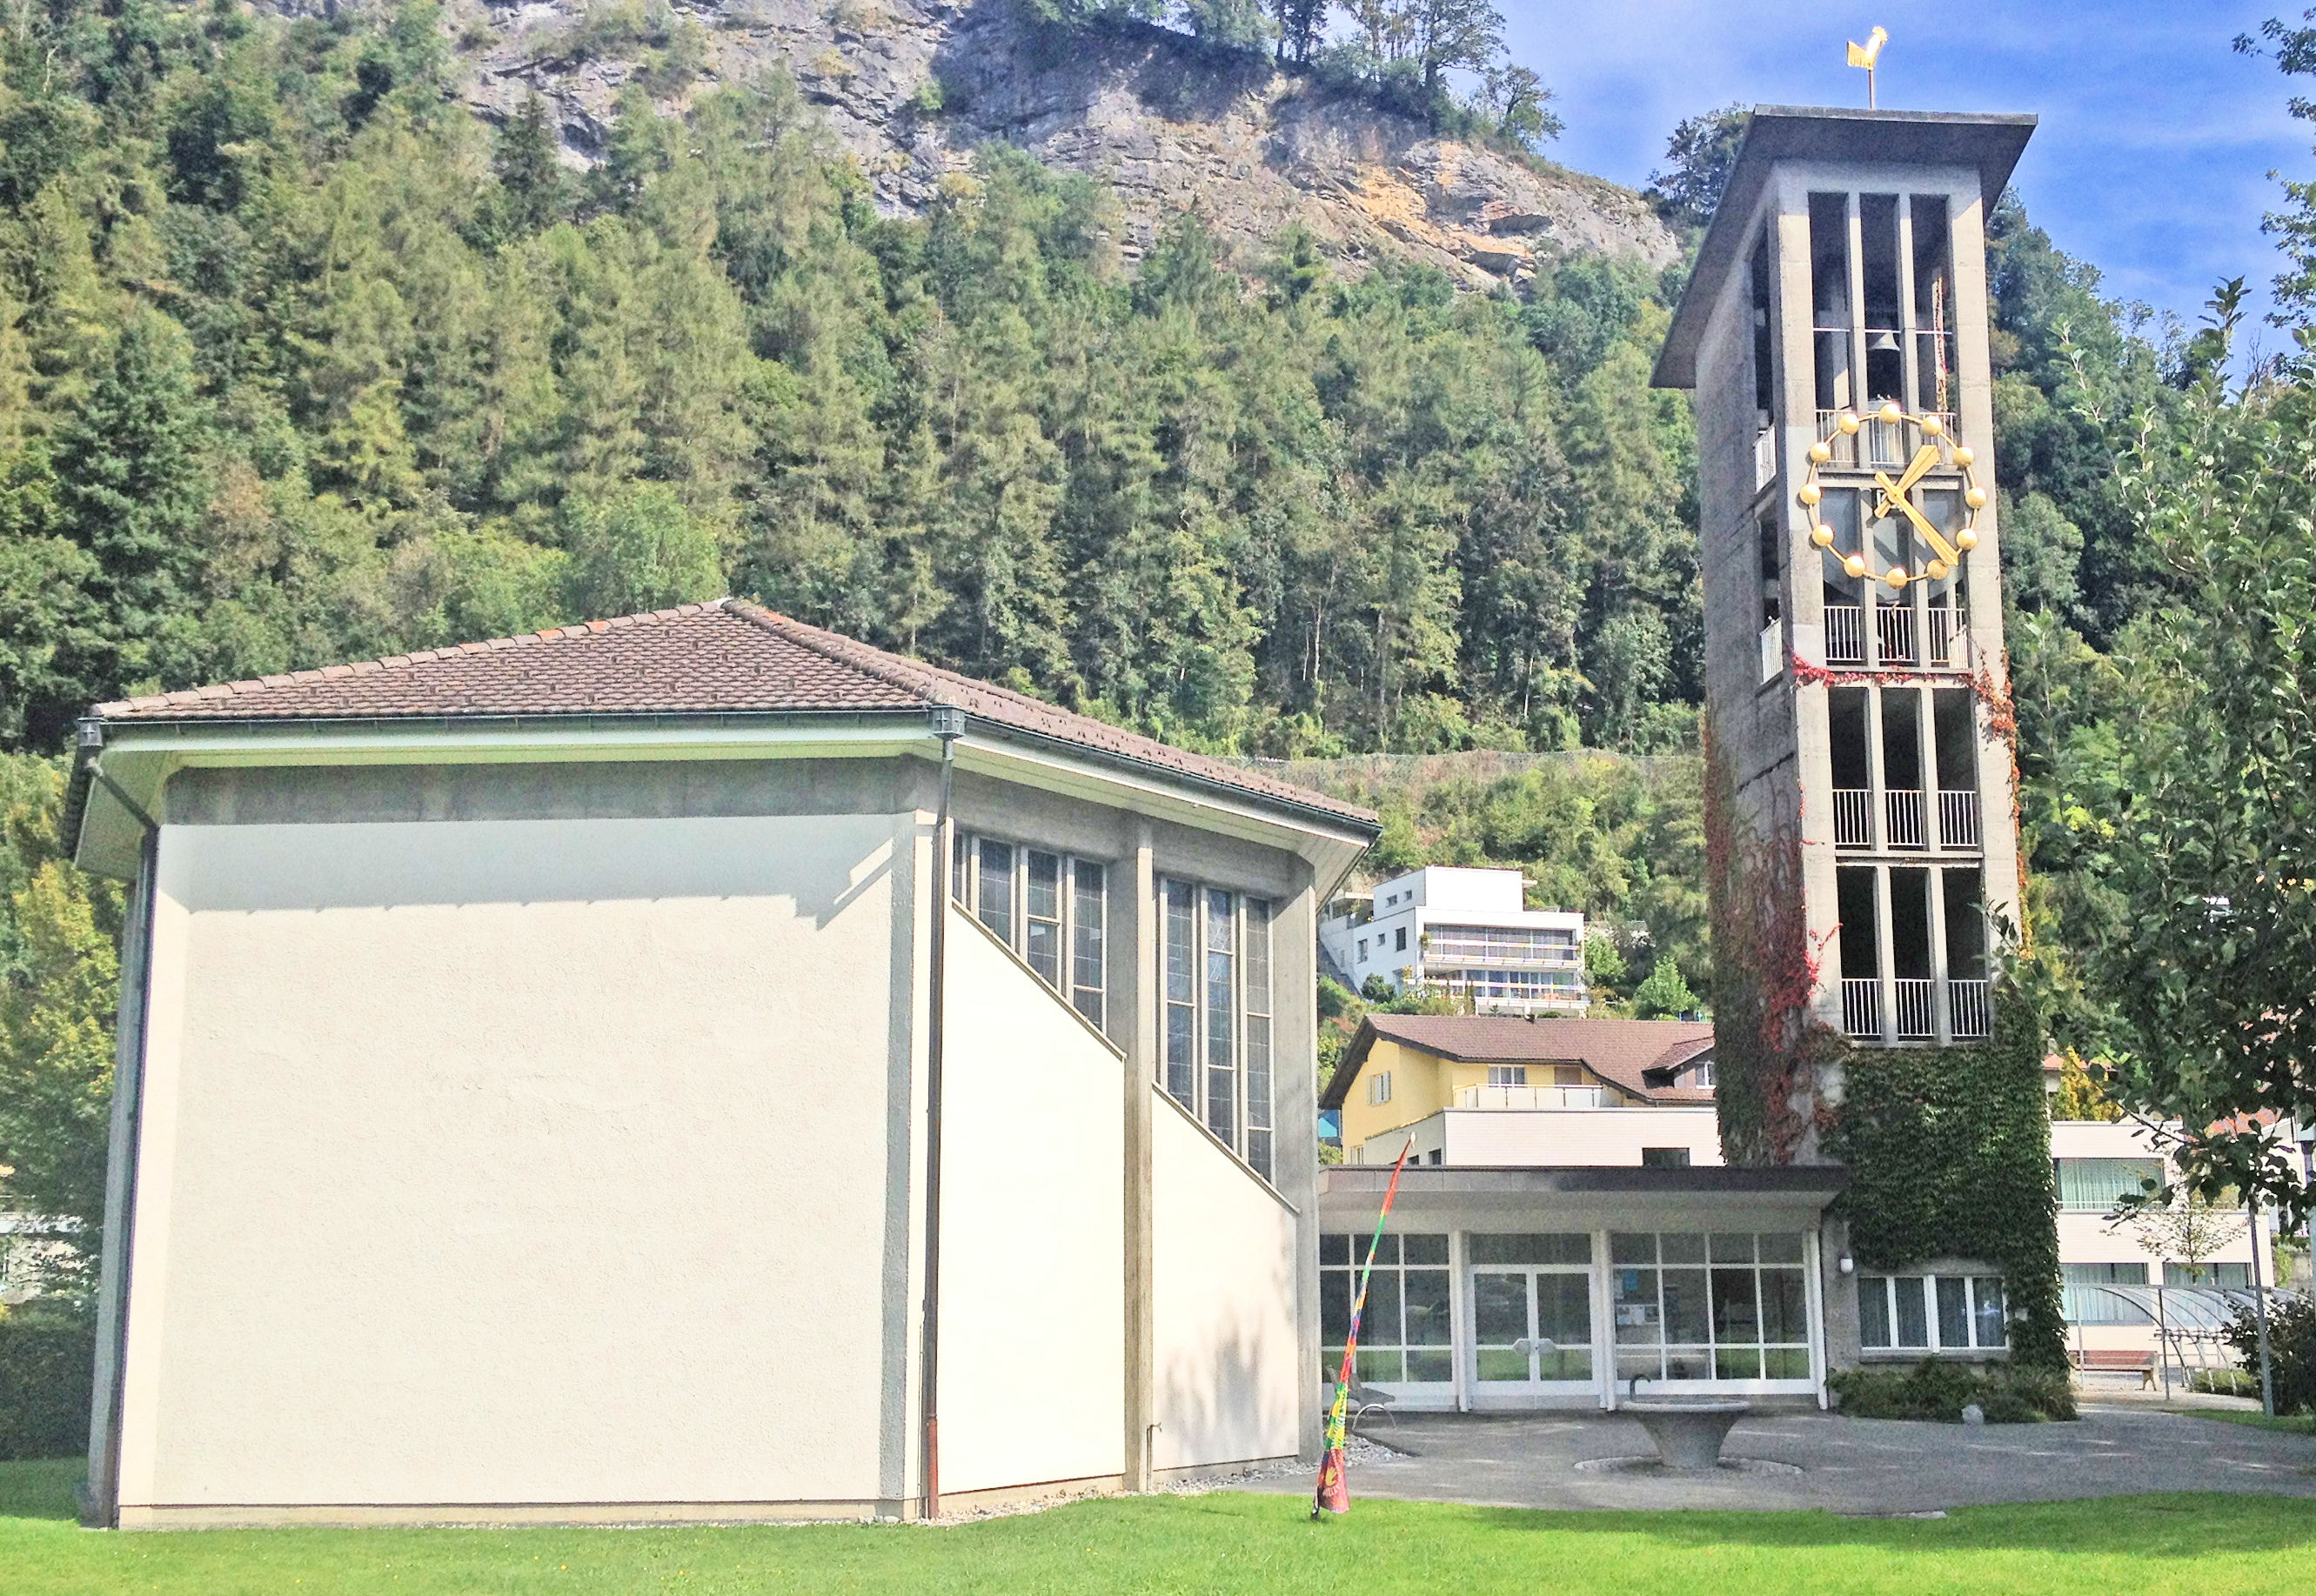 Die evangelische Zwinglikirche wurde 1959 eingeweiht.